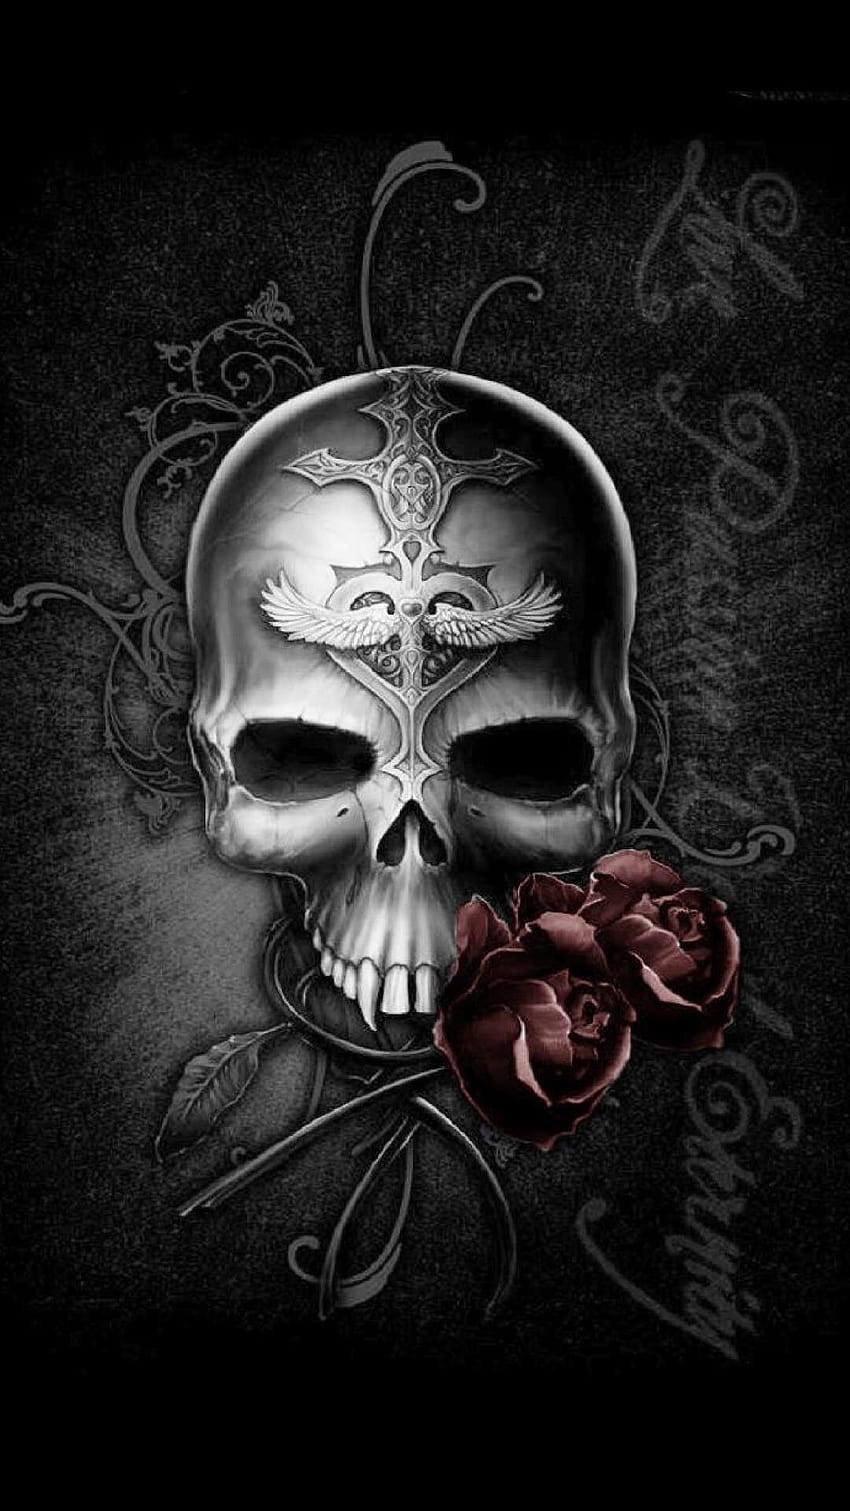 3D, skull, grim reaper wallpaper by Russel1977 - Download on ZEDGE